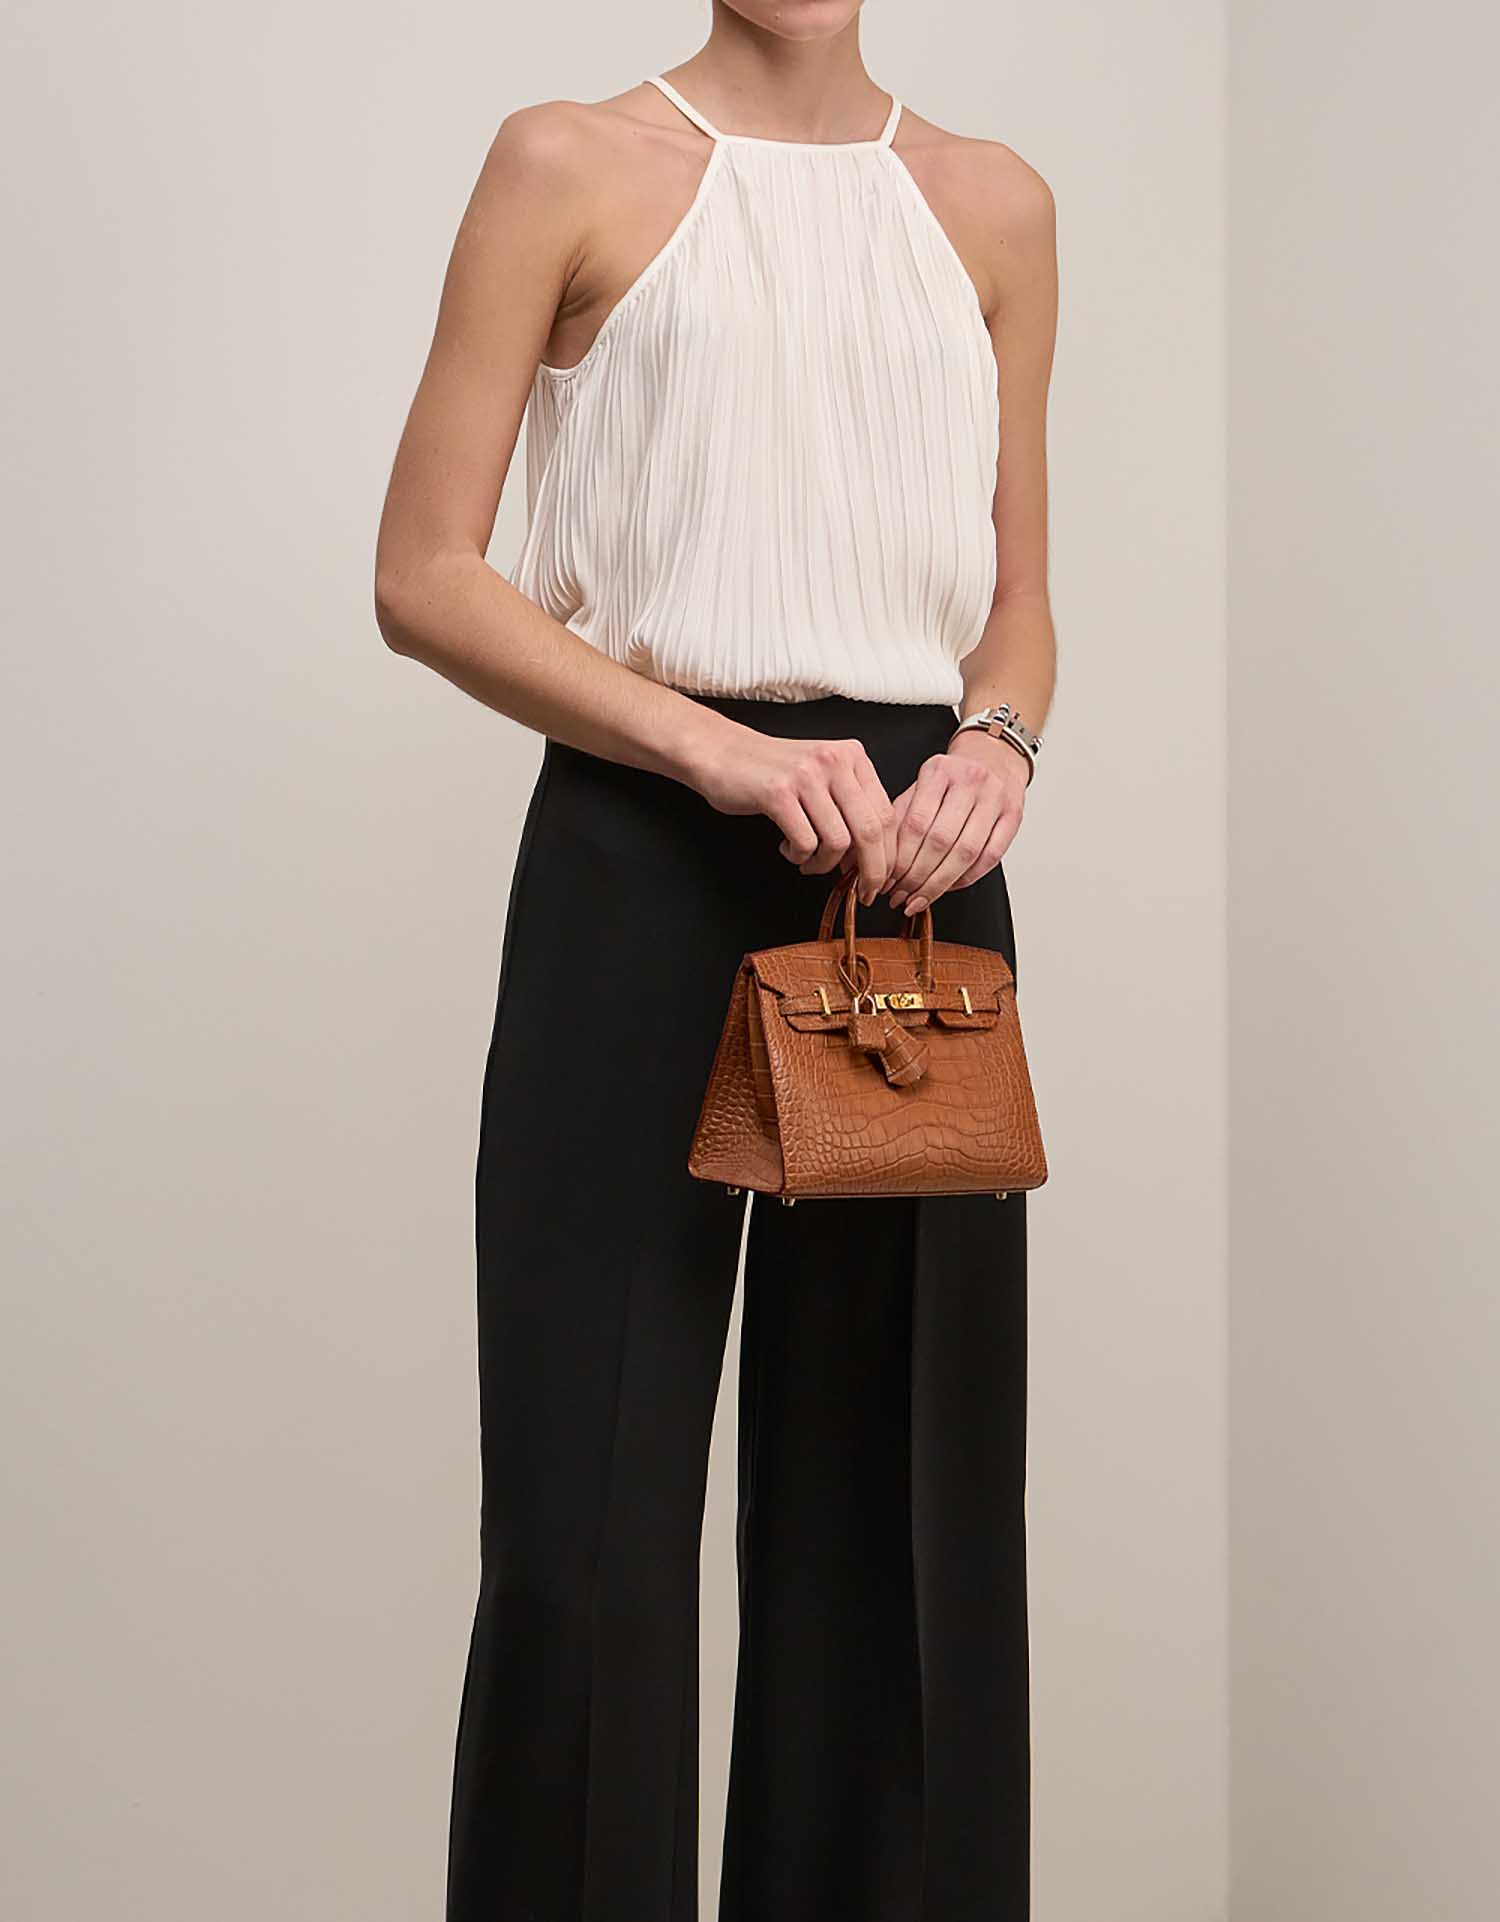 Hermès Birkin 20 Or sur Modèle | Vendez votre sac de créateur sur Saclab.com